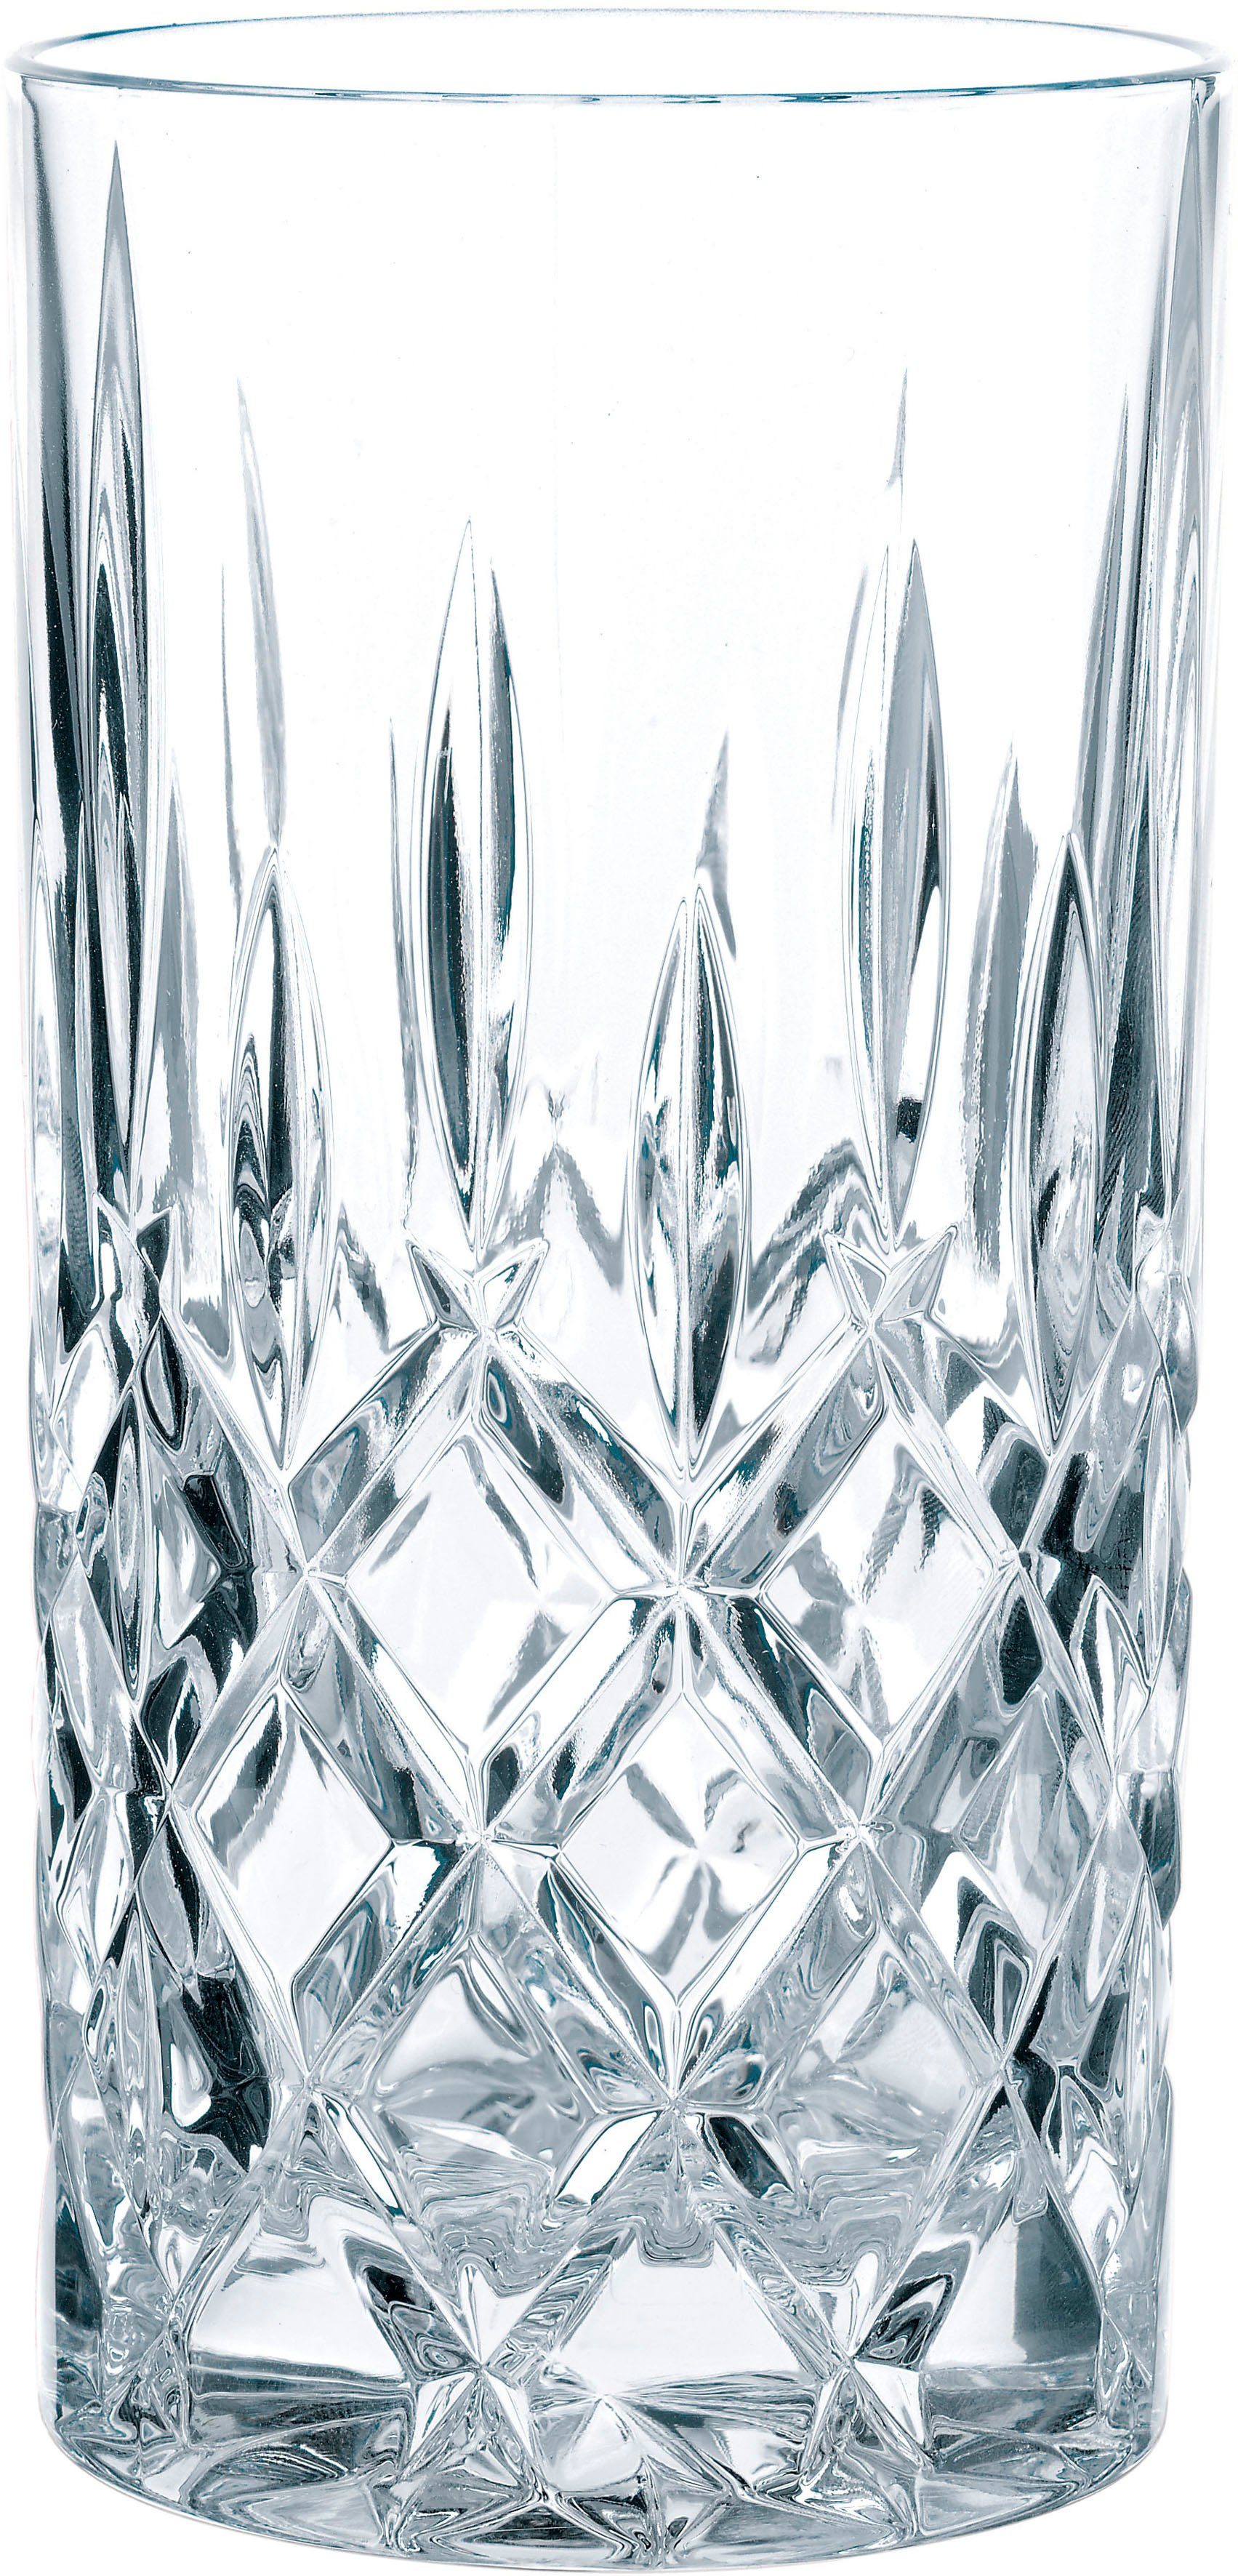 Longdrinkglas ml, Noblesse, Made 395 6-teilig Nachtmann in Germany, Kristallglas,